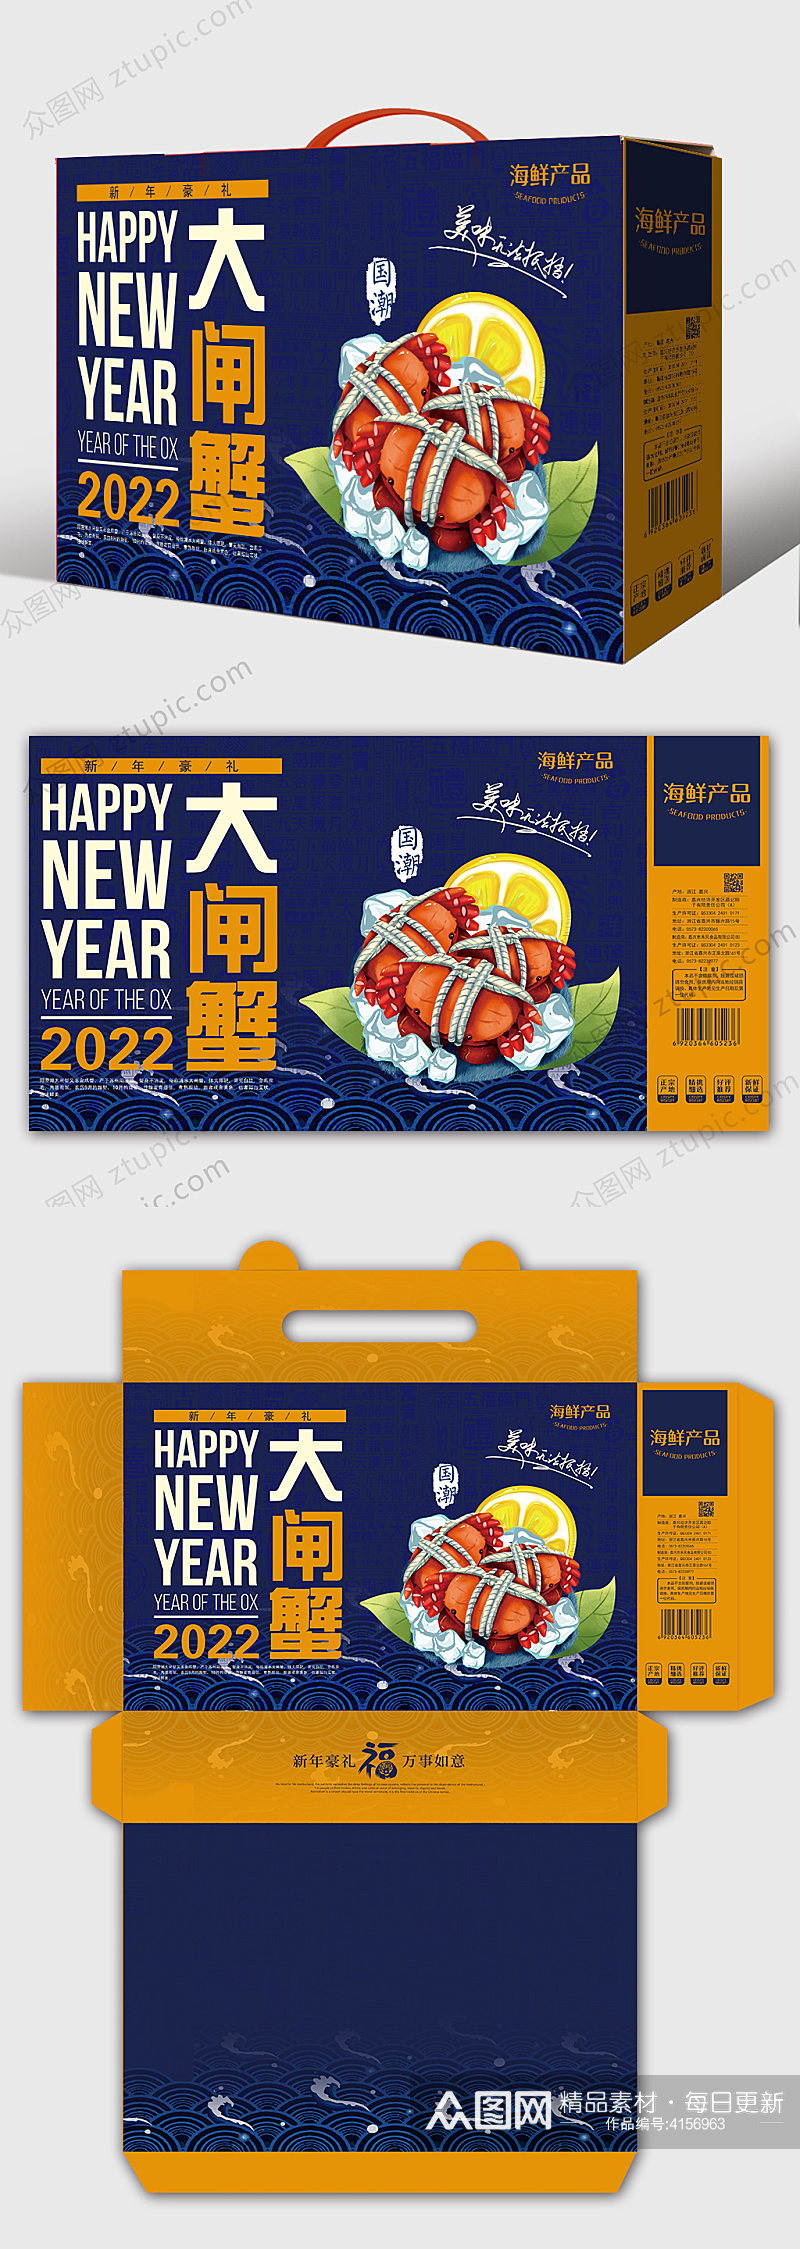 高档新年礼盒海鲜大闸蟹年货包装设计素材